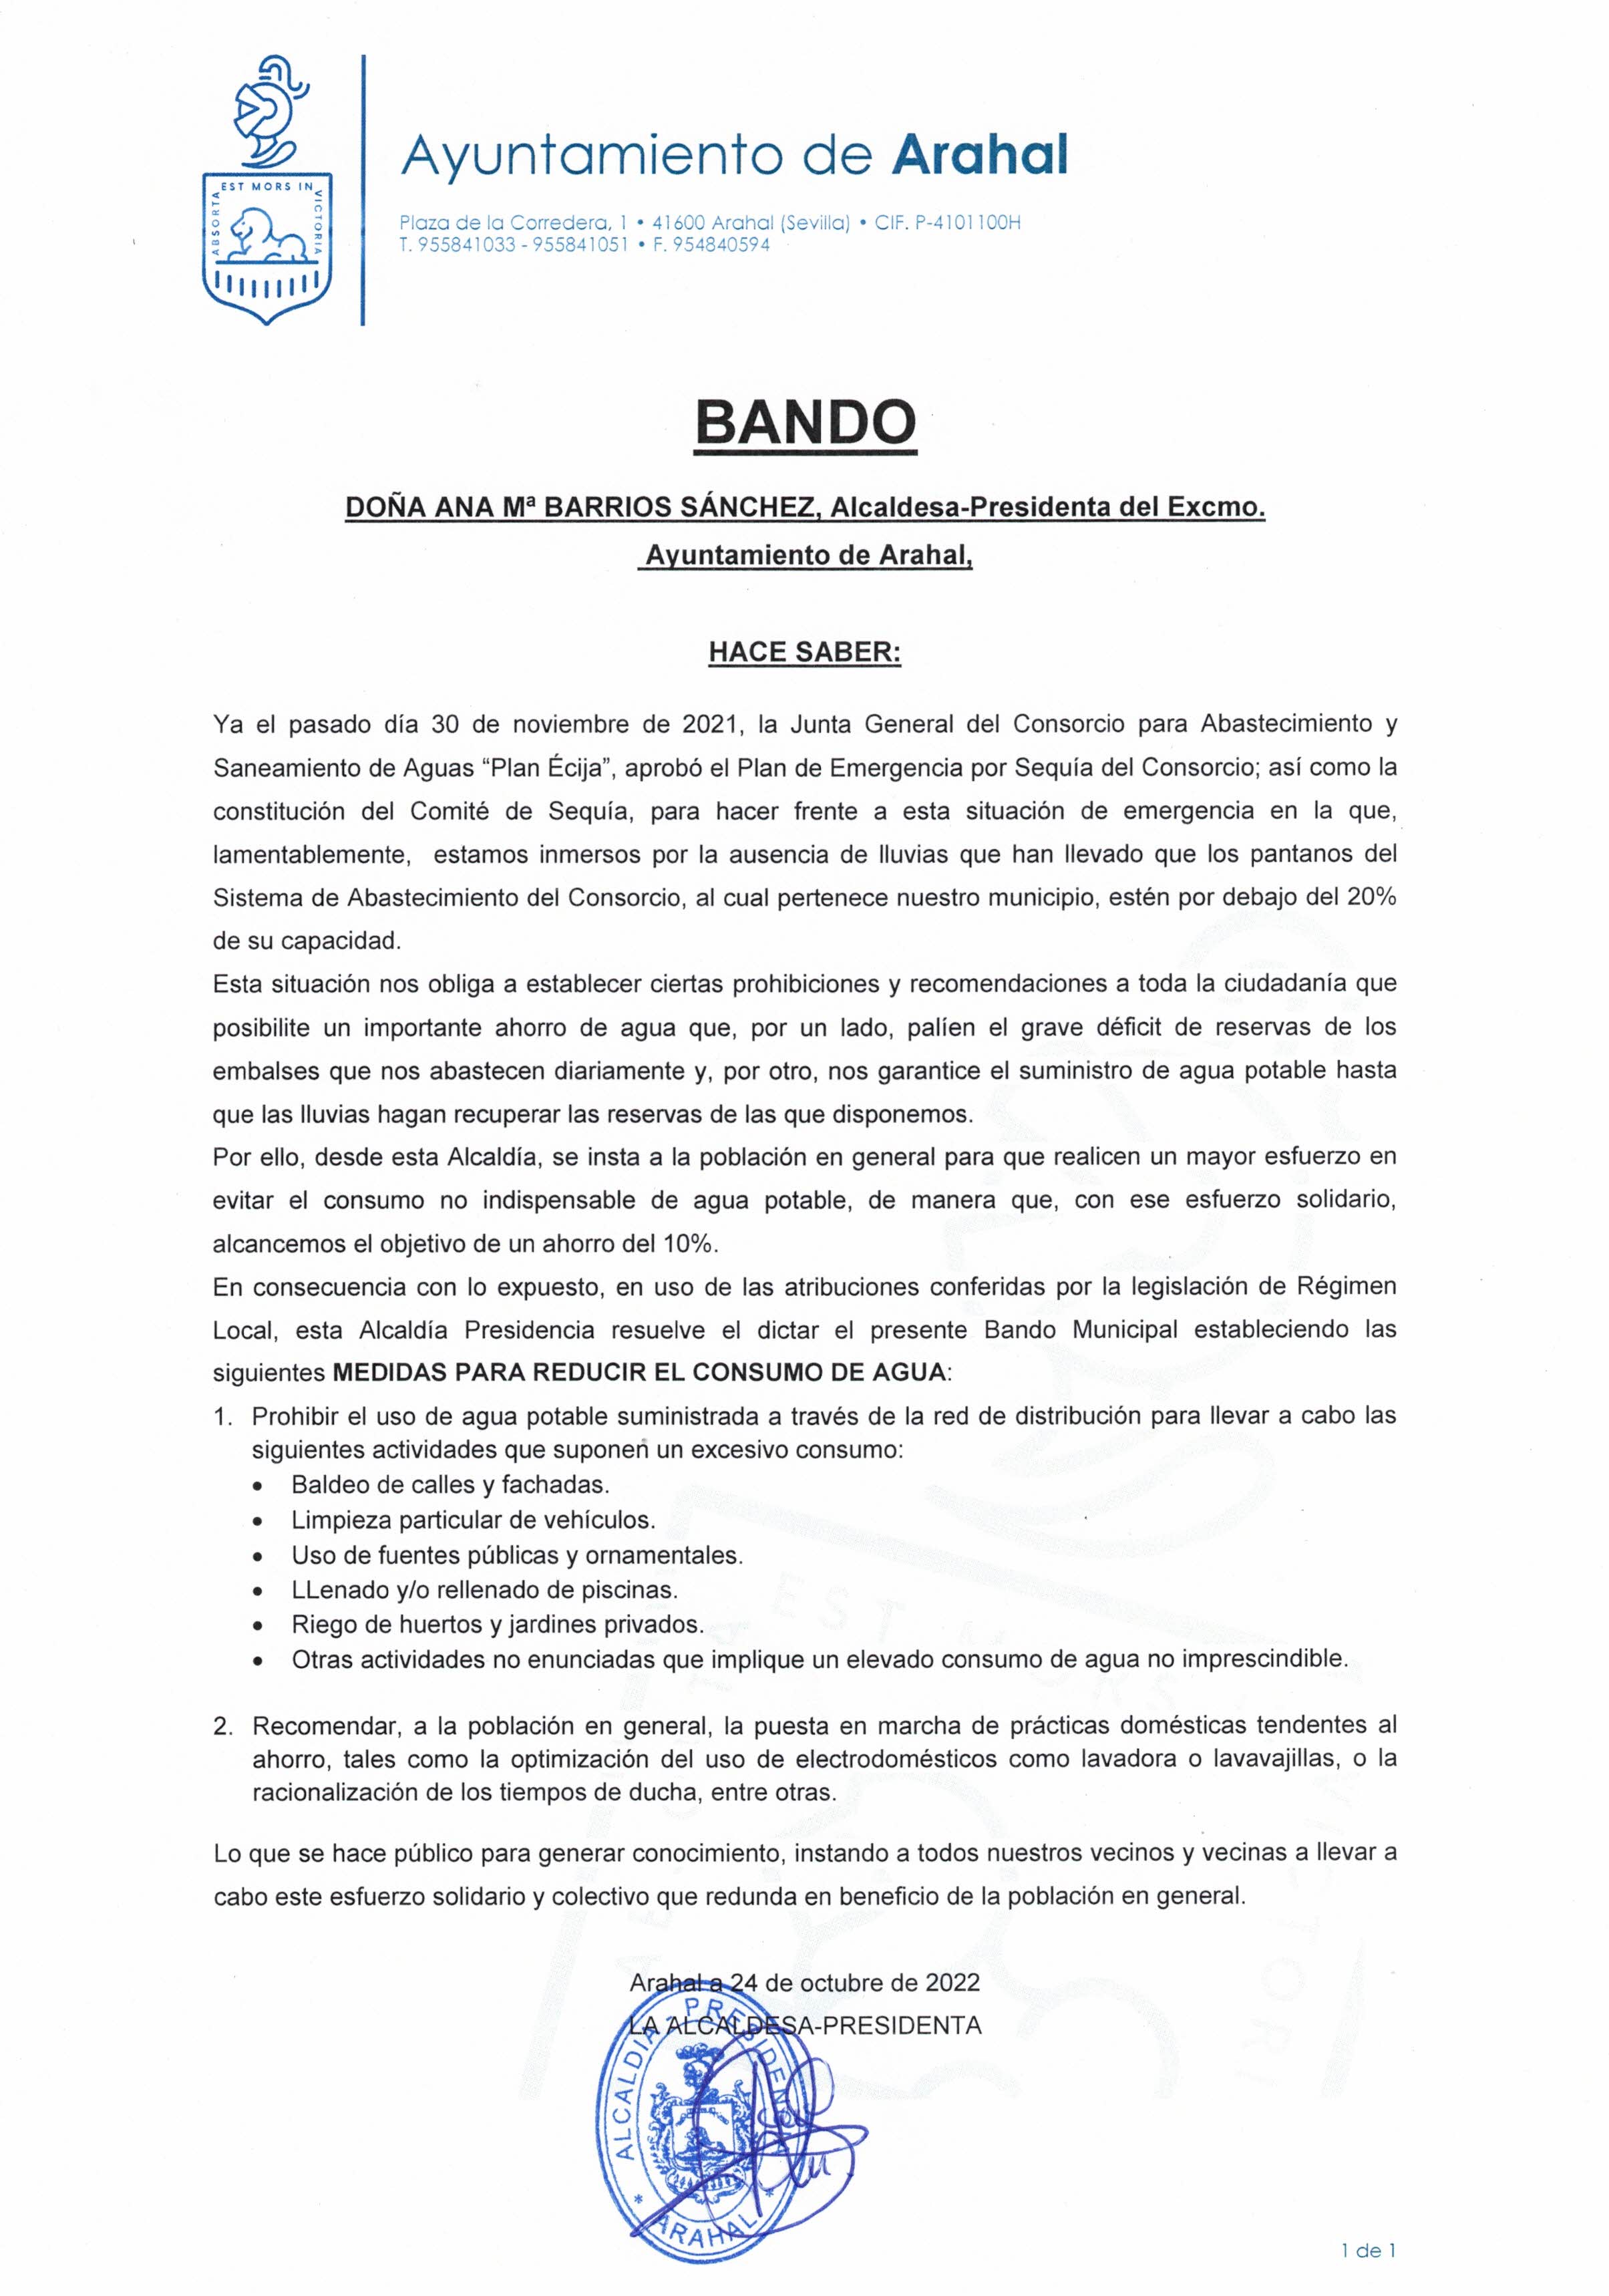 BANDO SEQUÍA AGUA FIRMADO 24102022